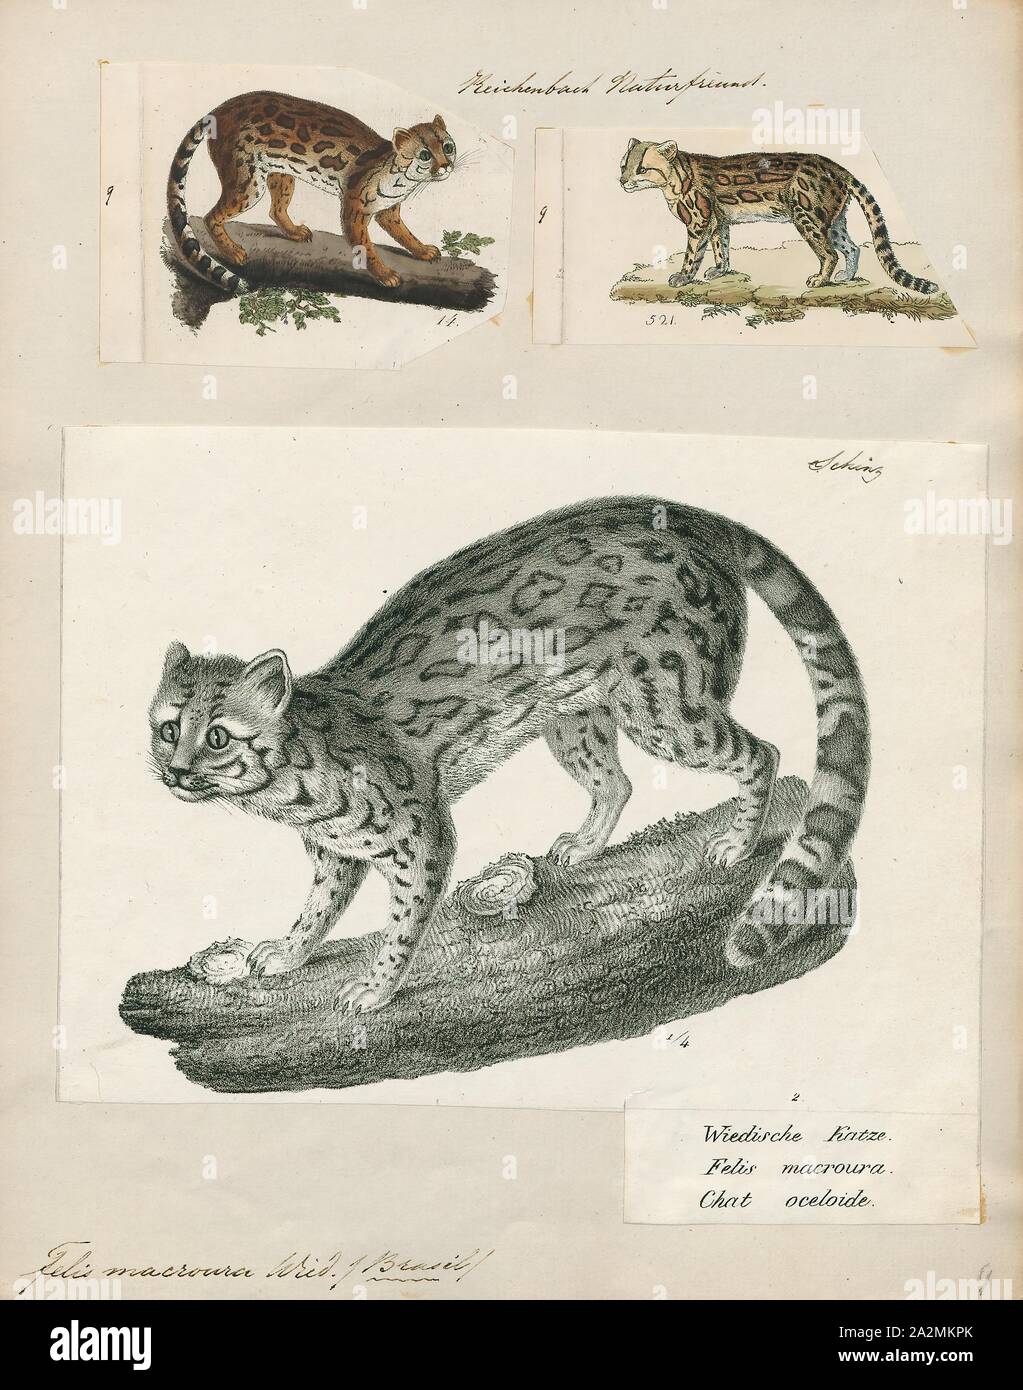 Felis macroura, Imprimer, Felis est un genre de petites et moyennes cat Felinae espèces indigènes de la plus grande partie de l'Afrique et au sud de 60° de latitude dans l'Europe et l'Asie à l'Indochine. Le genre comprend le chat domestique. La plus petite espèce felis est le chat à pieds noirs avec une tête et la longueur du corps de 38 à 42 cm (15 à 17). Le plus grand est le chat de jungle avec une tête et la longueur du corps de 62 à 76 cm (24 à 30). En 1700-1880, Banque D'Images